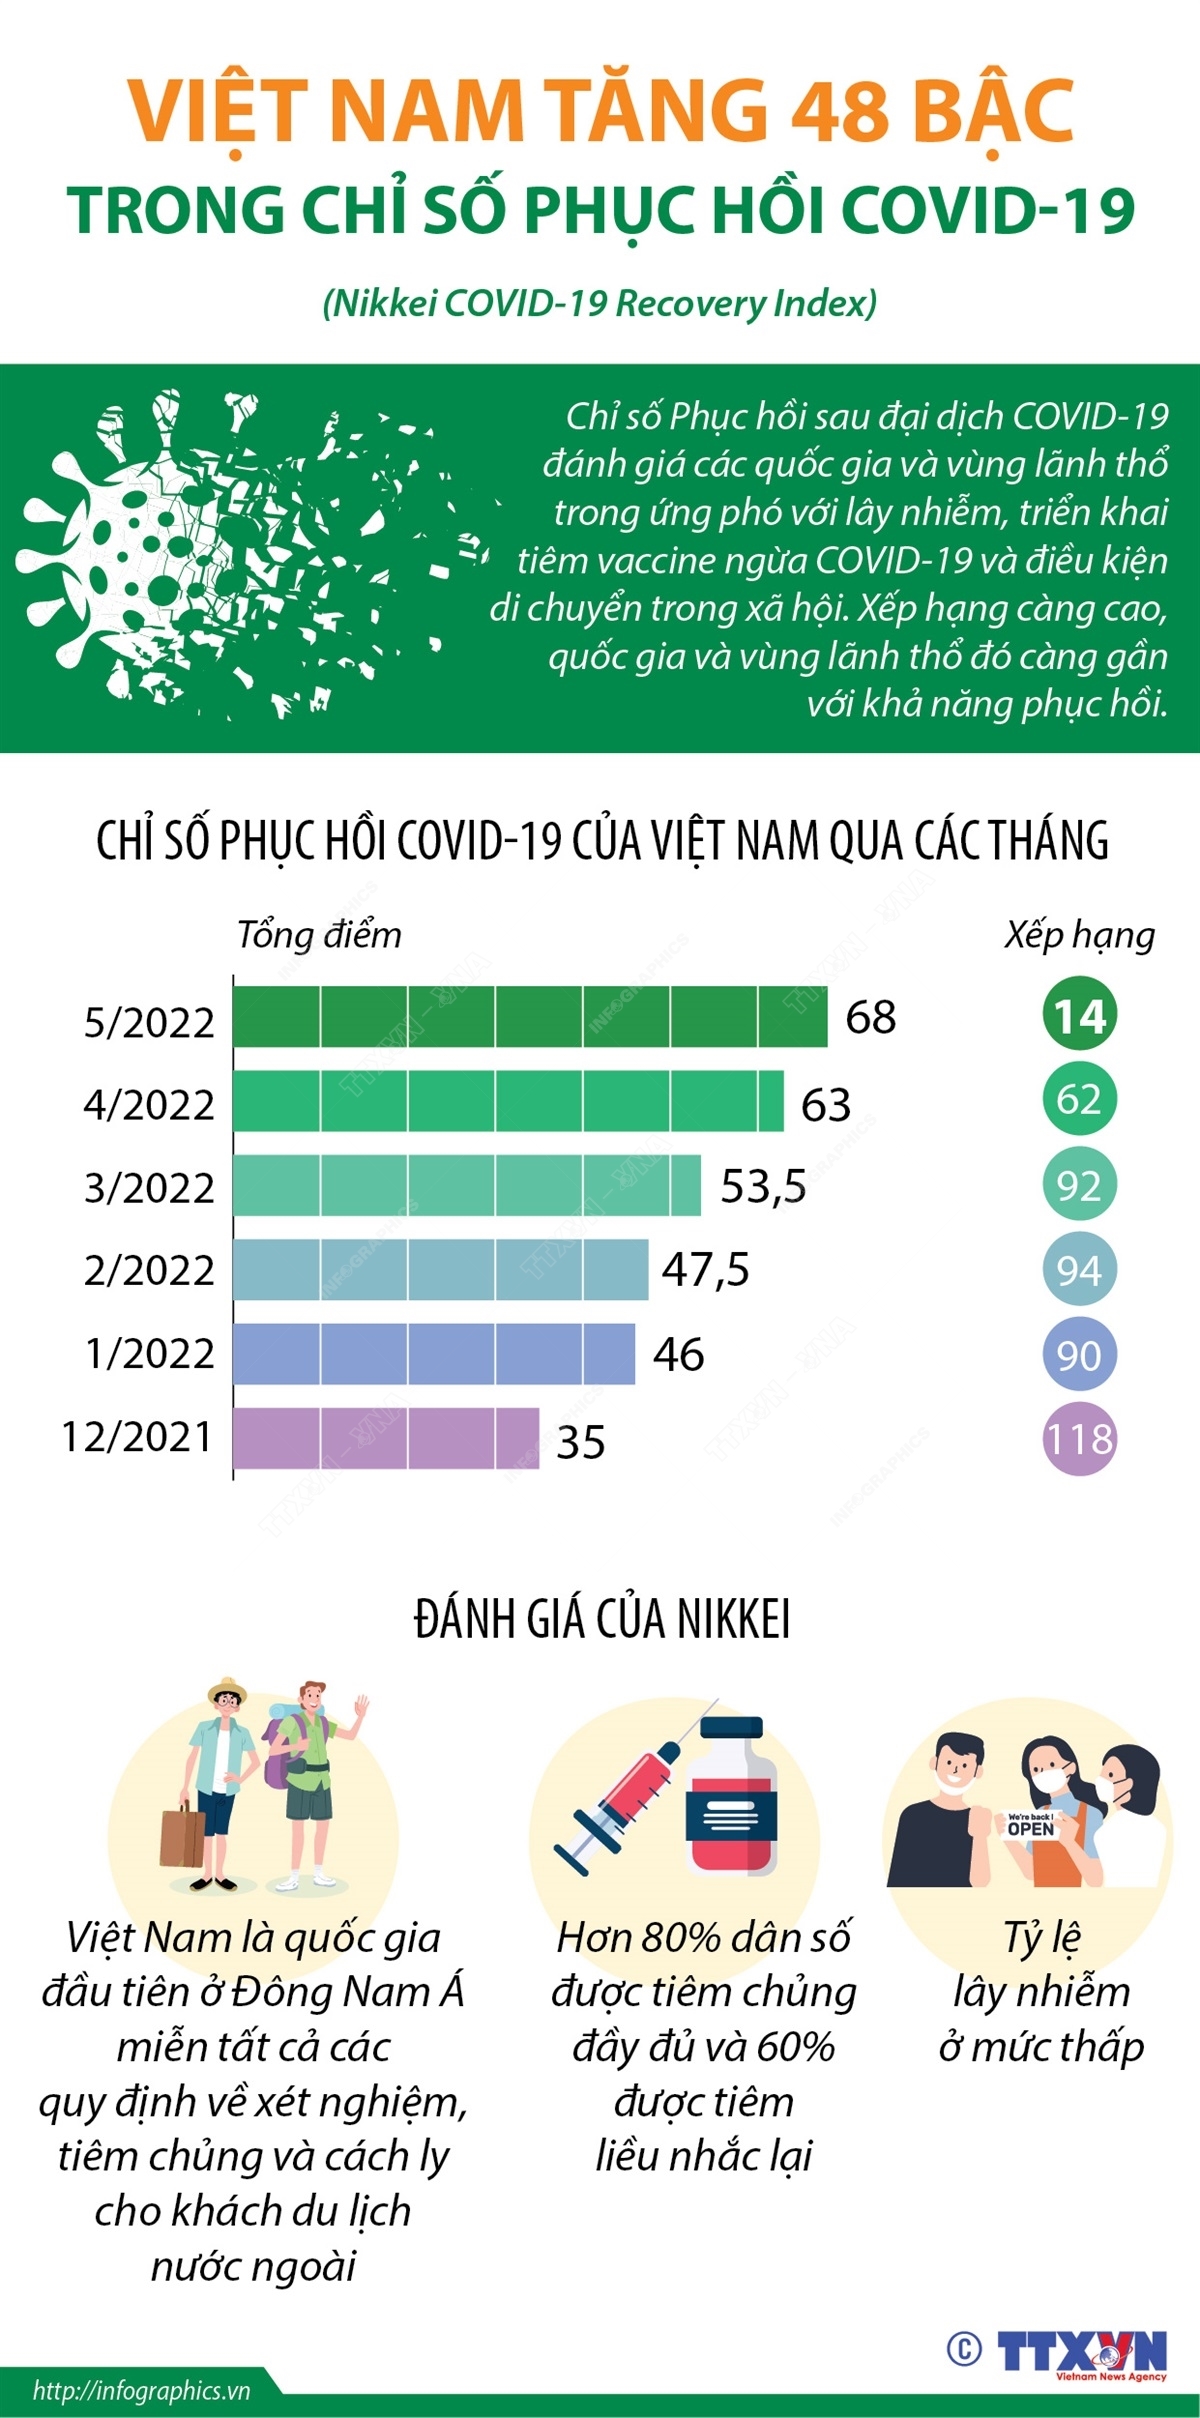 Việt Nam tăng 48 bậc trong Chỉ số Phục hồi COVID-19